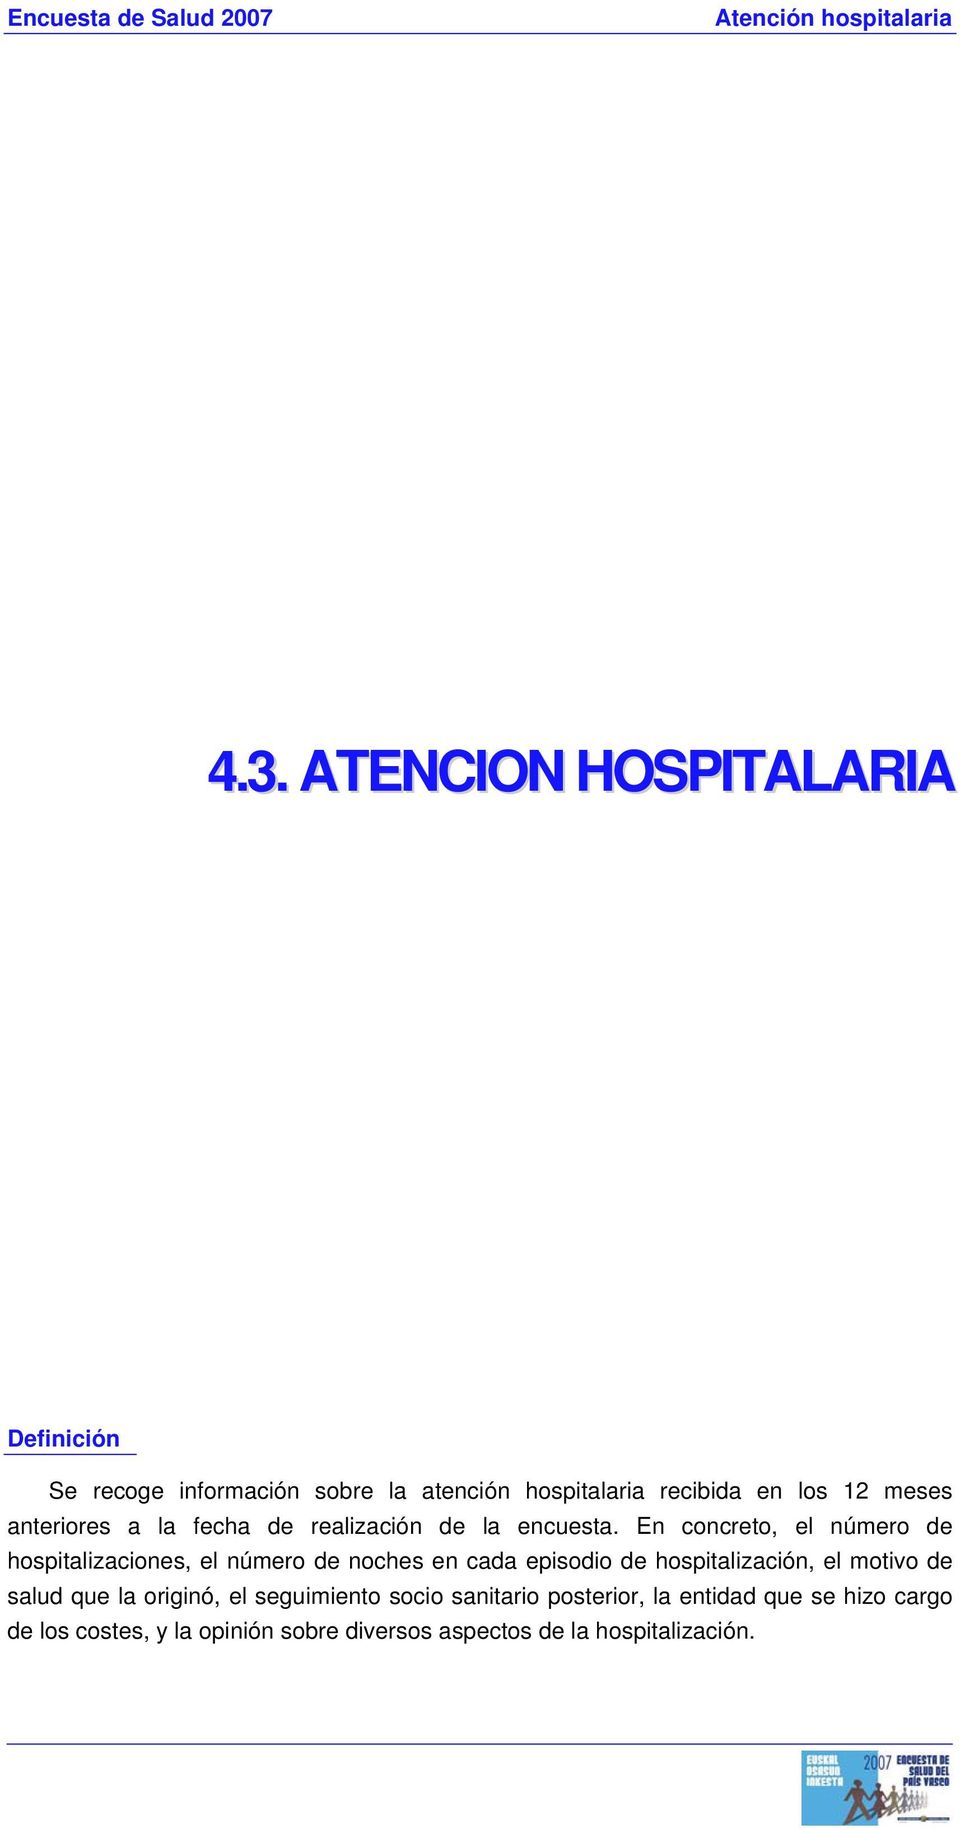 En concreto, el número de hospitalizaciones, el número de noches en cada episodio de hospitalización, el motivo